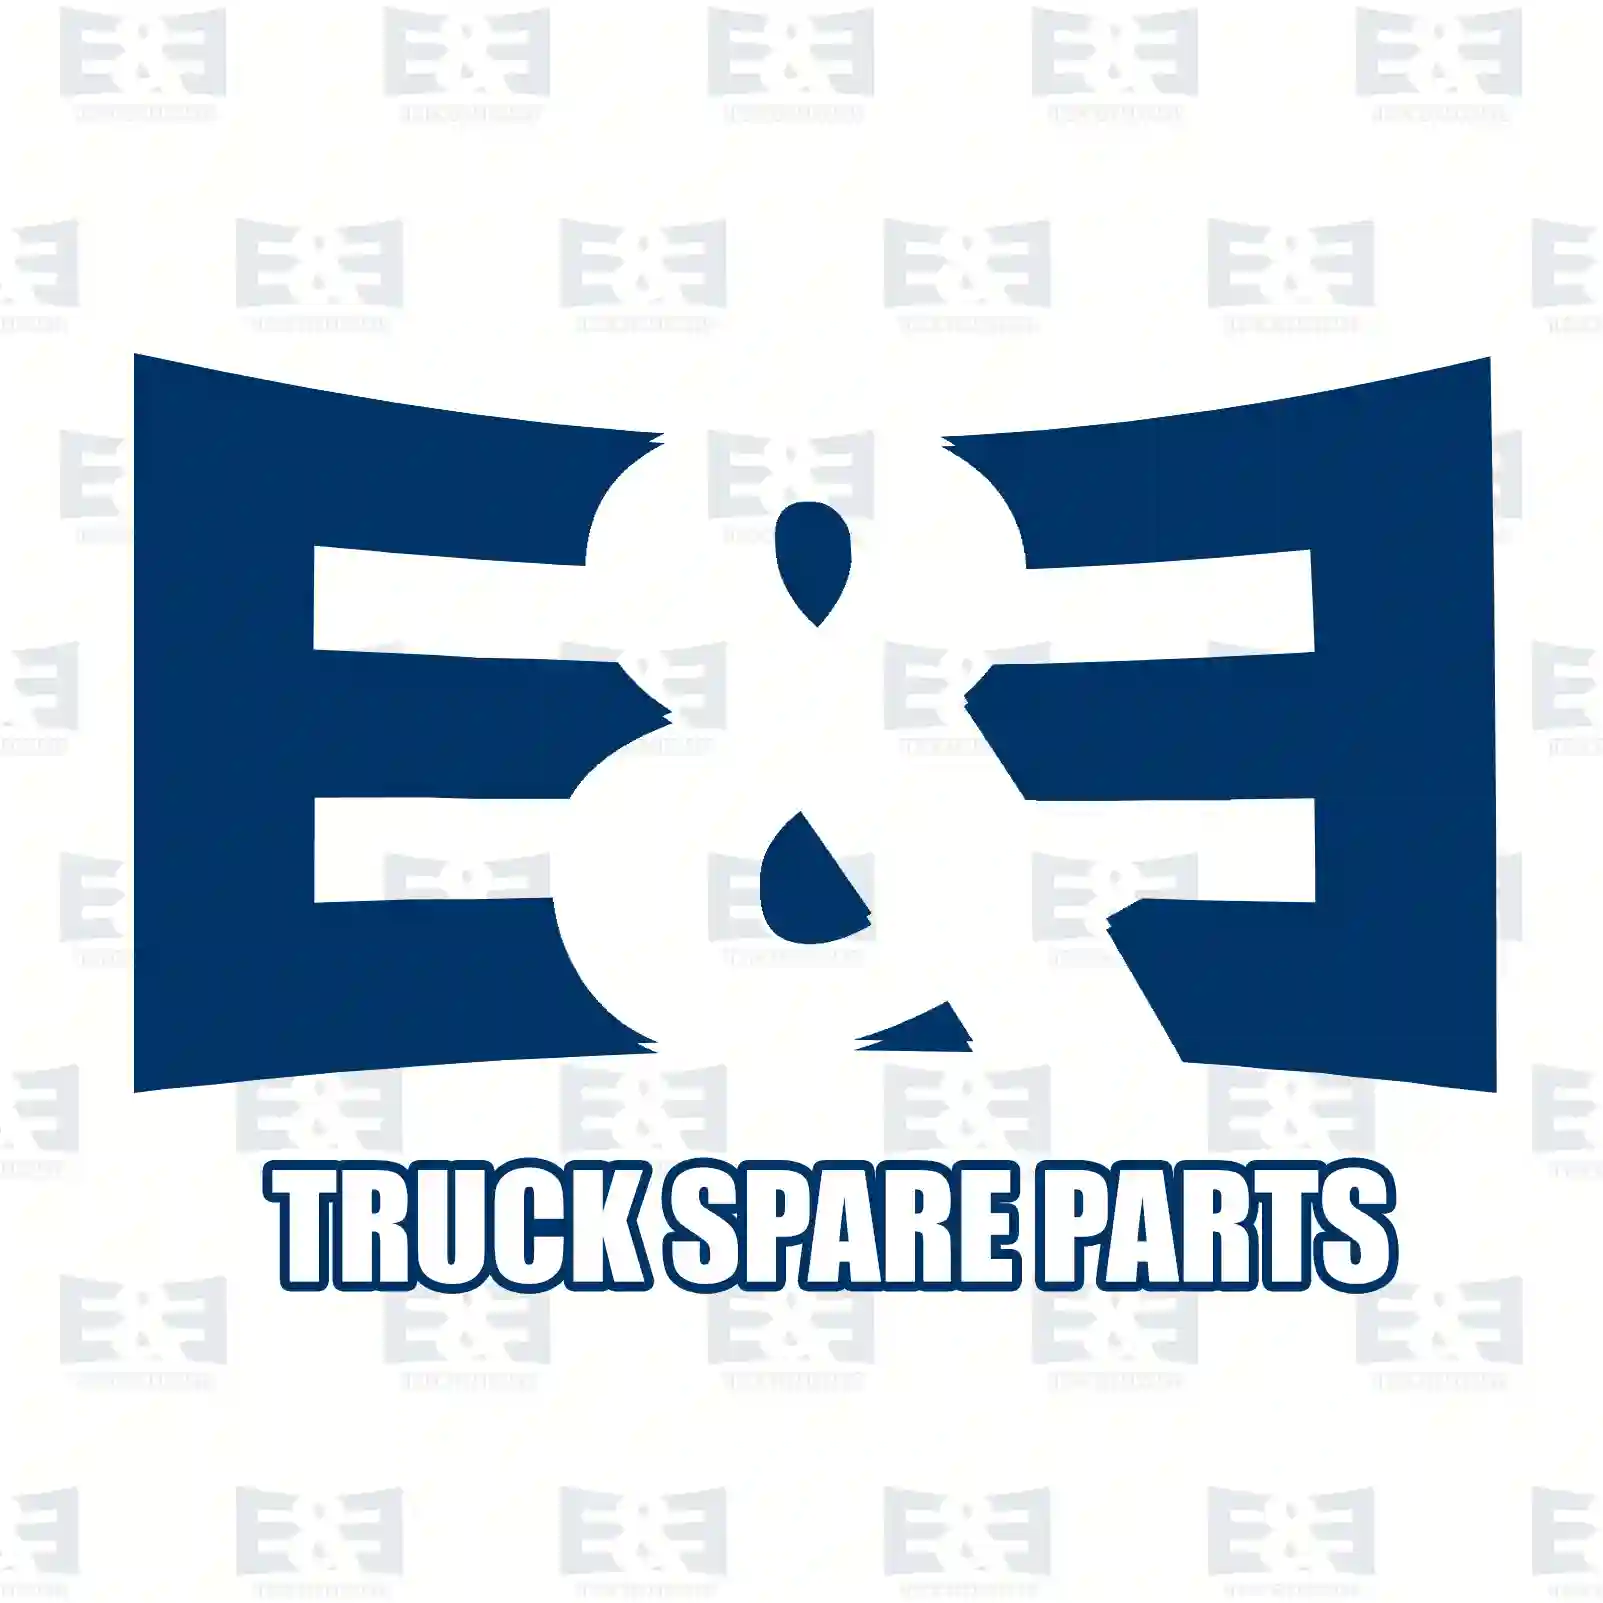 Belt tensioner, 2E2201167, 076145261A, 076145278, 076145299S1 ||  2E2201167 E&E Truck Spare Parts | Truck Spare Parts, Auotomotive Spare Parts Belt tensioner, 2E2201167, 076145261A, 076145278, 076145299S1 ||  2E2201167 E&E Truck Spare Parts | Truck Spare Parts, Auotomotive Spare Parts